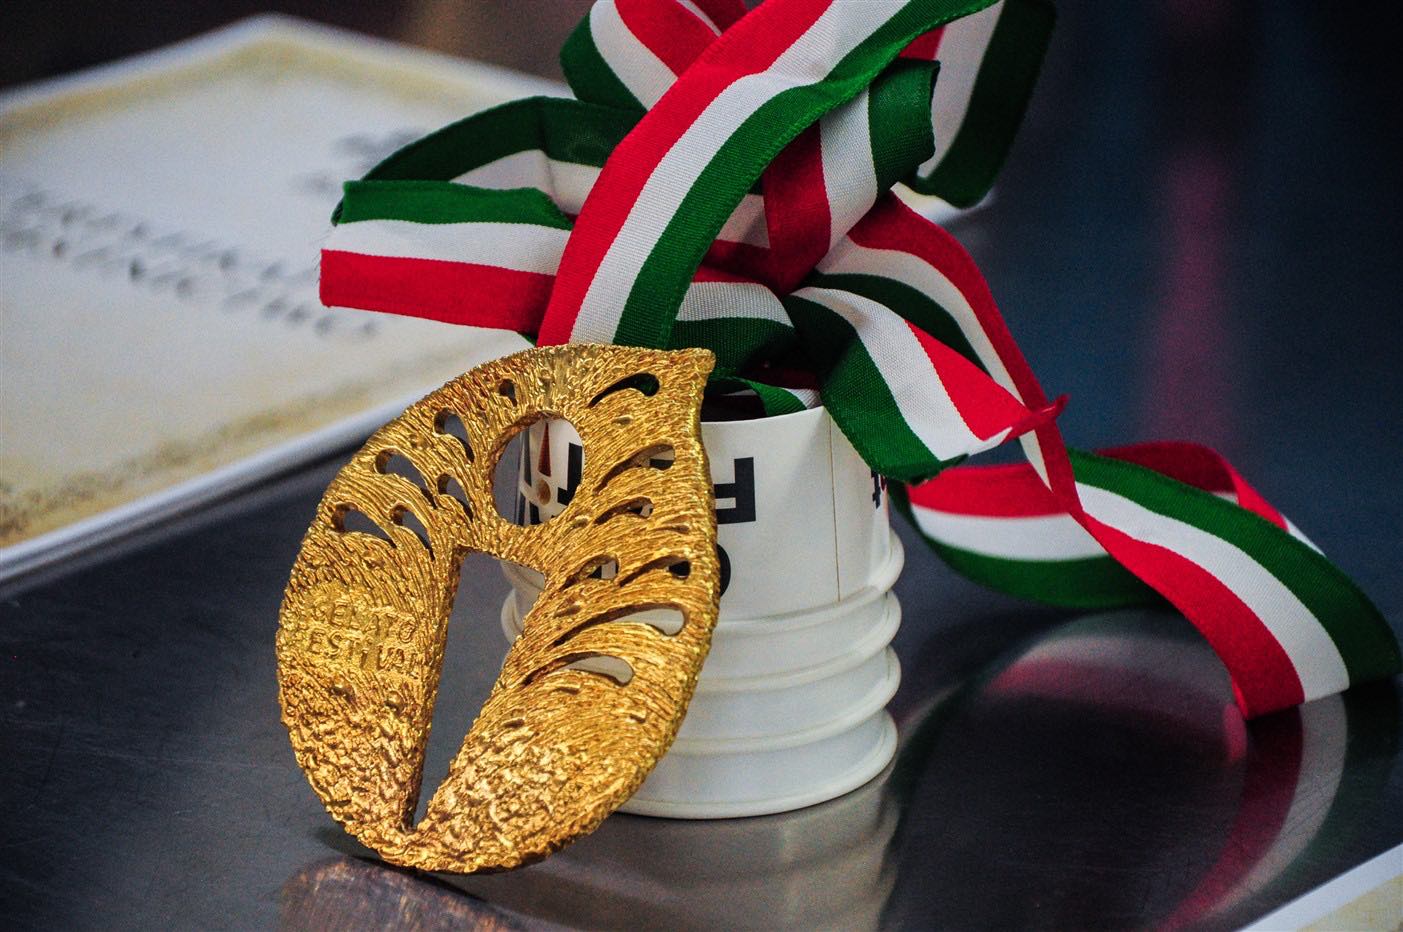 A Firenze si è tenuta la gara per decretare il miglior gelato alla birra e selezionare i Maestri Gelatieri per il Gelato Festival World Masters.